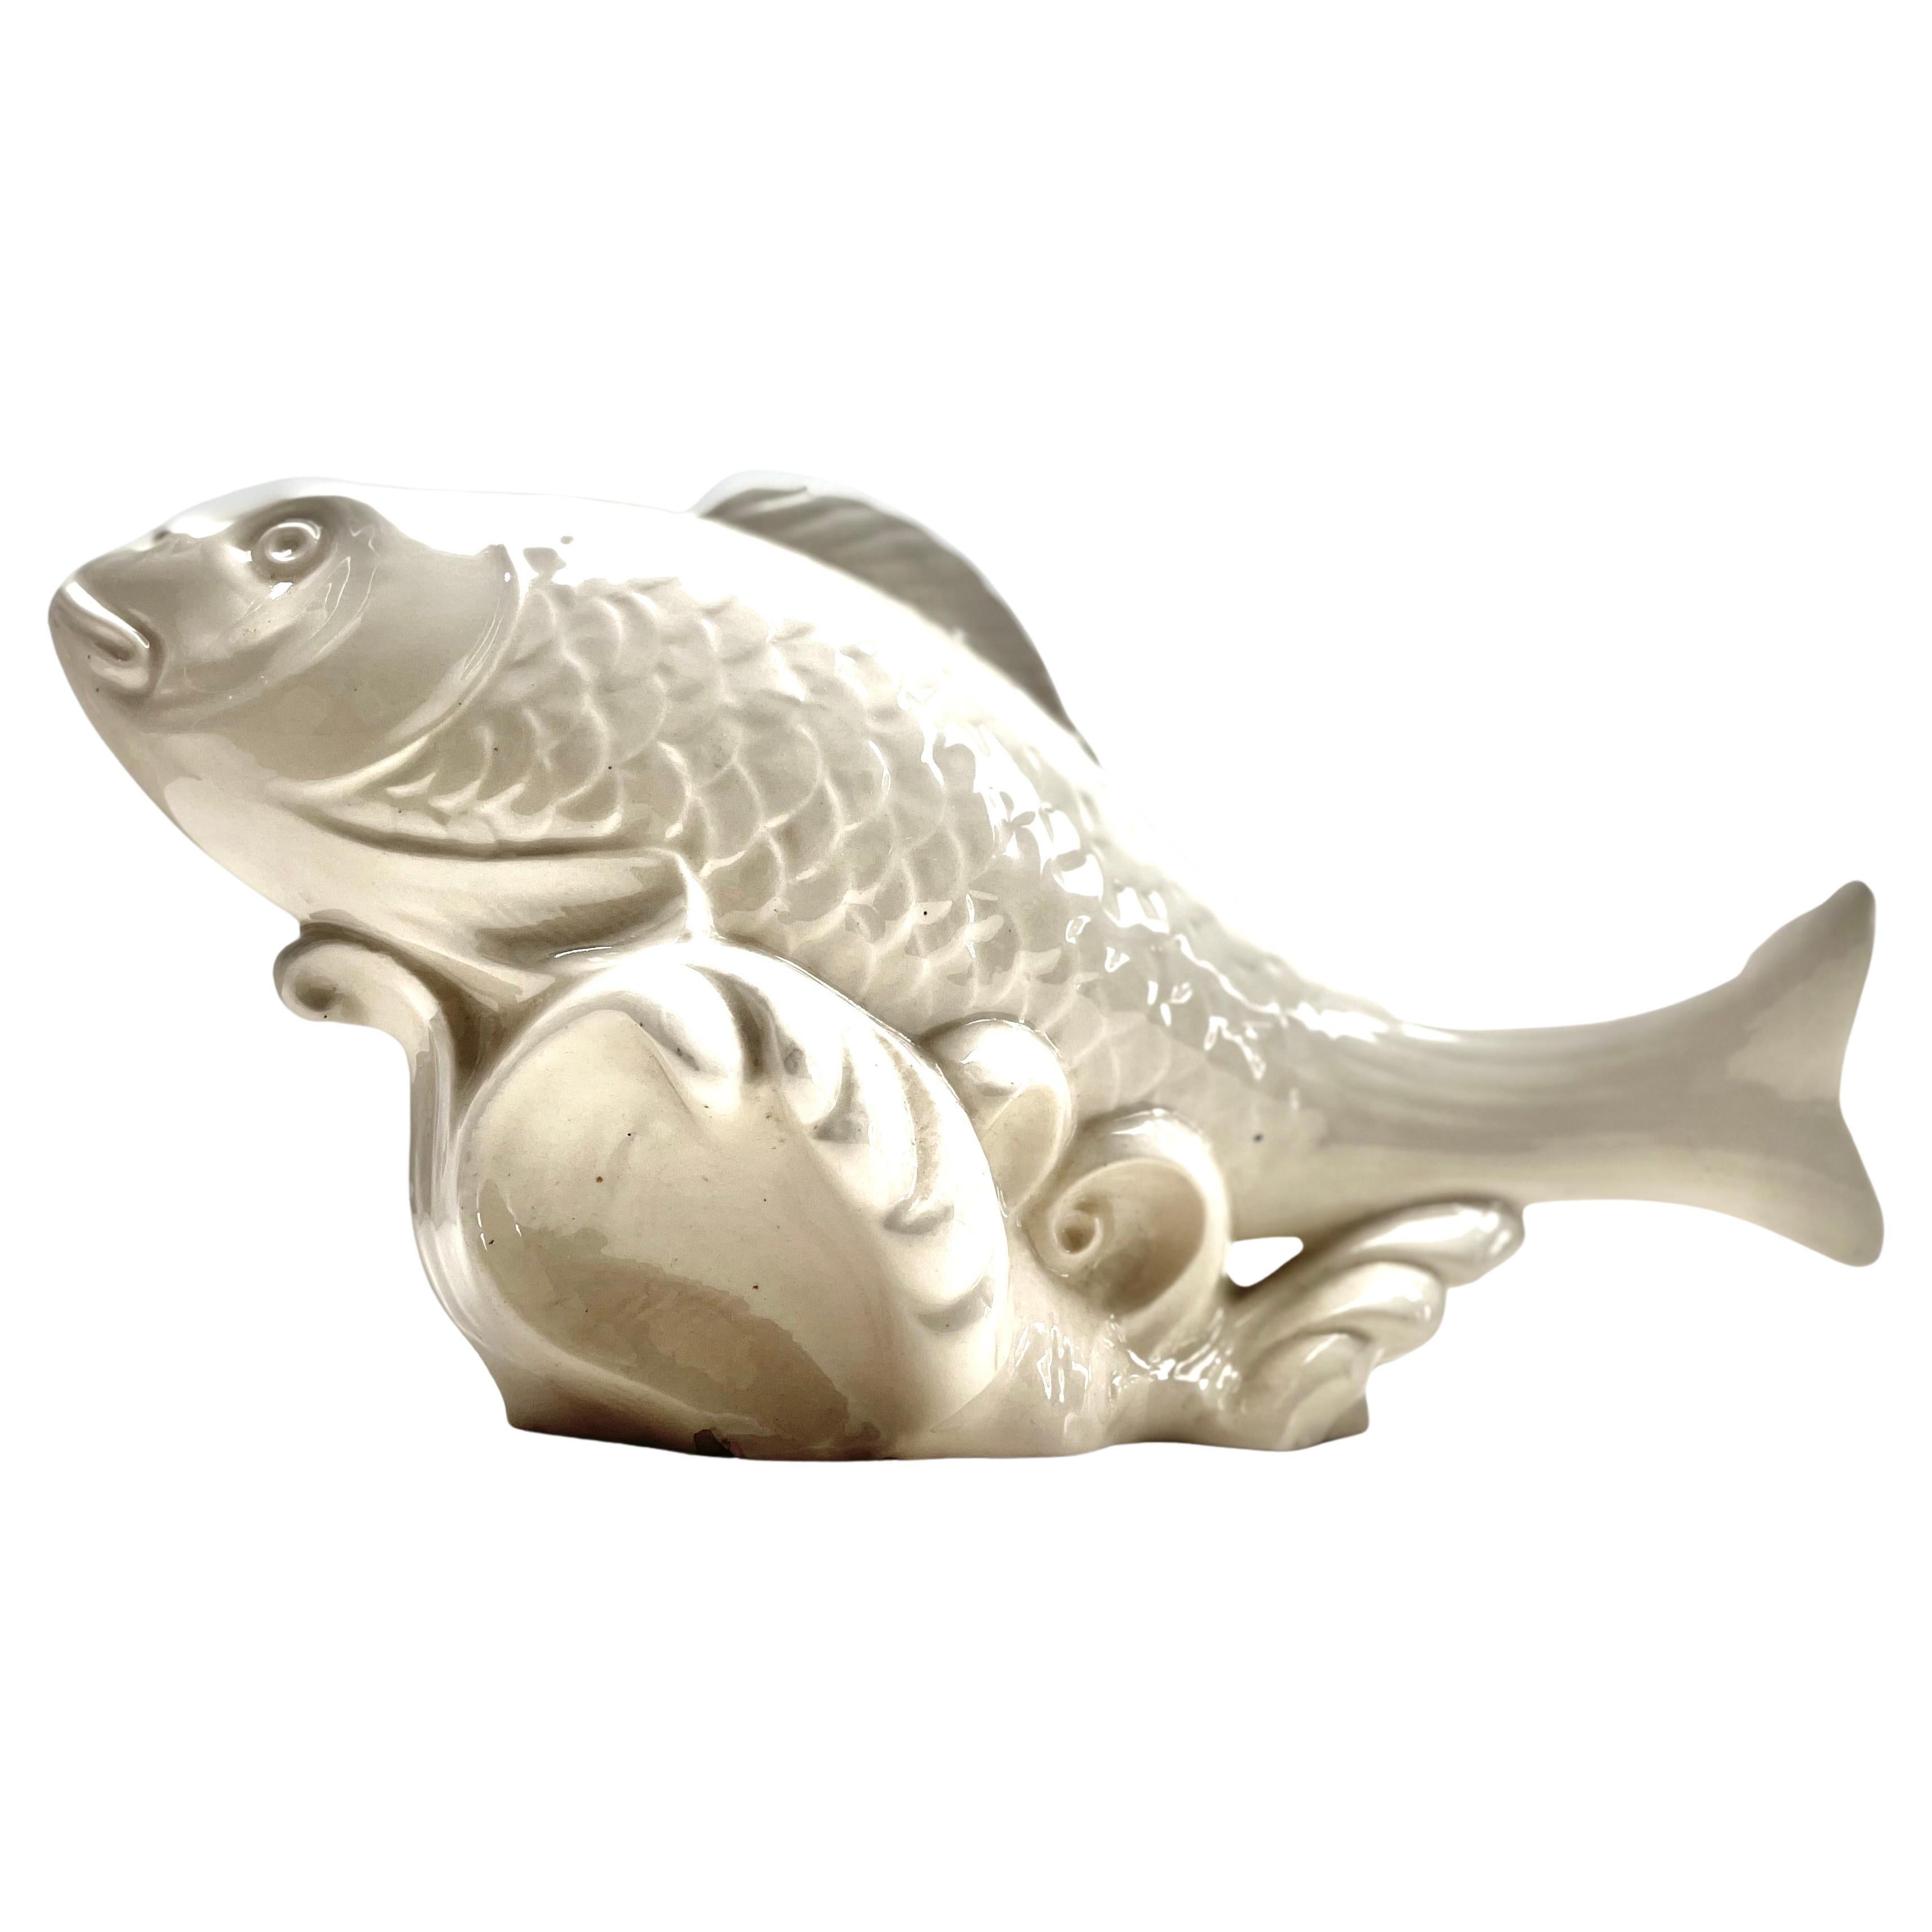 ceramic koi fish figurine